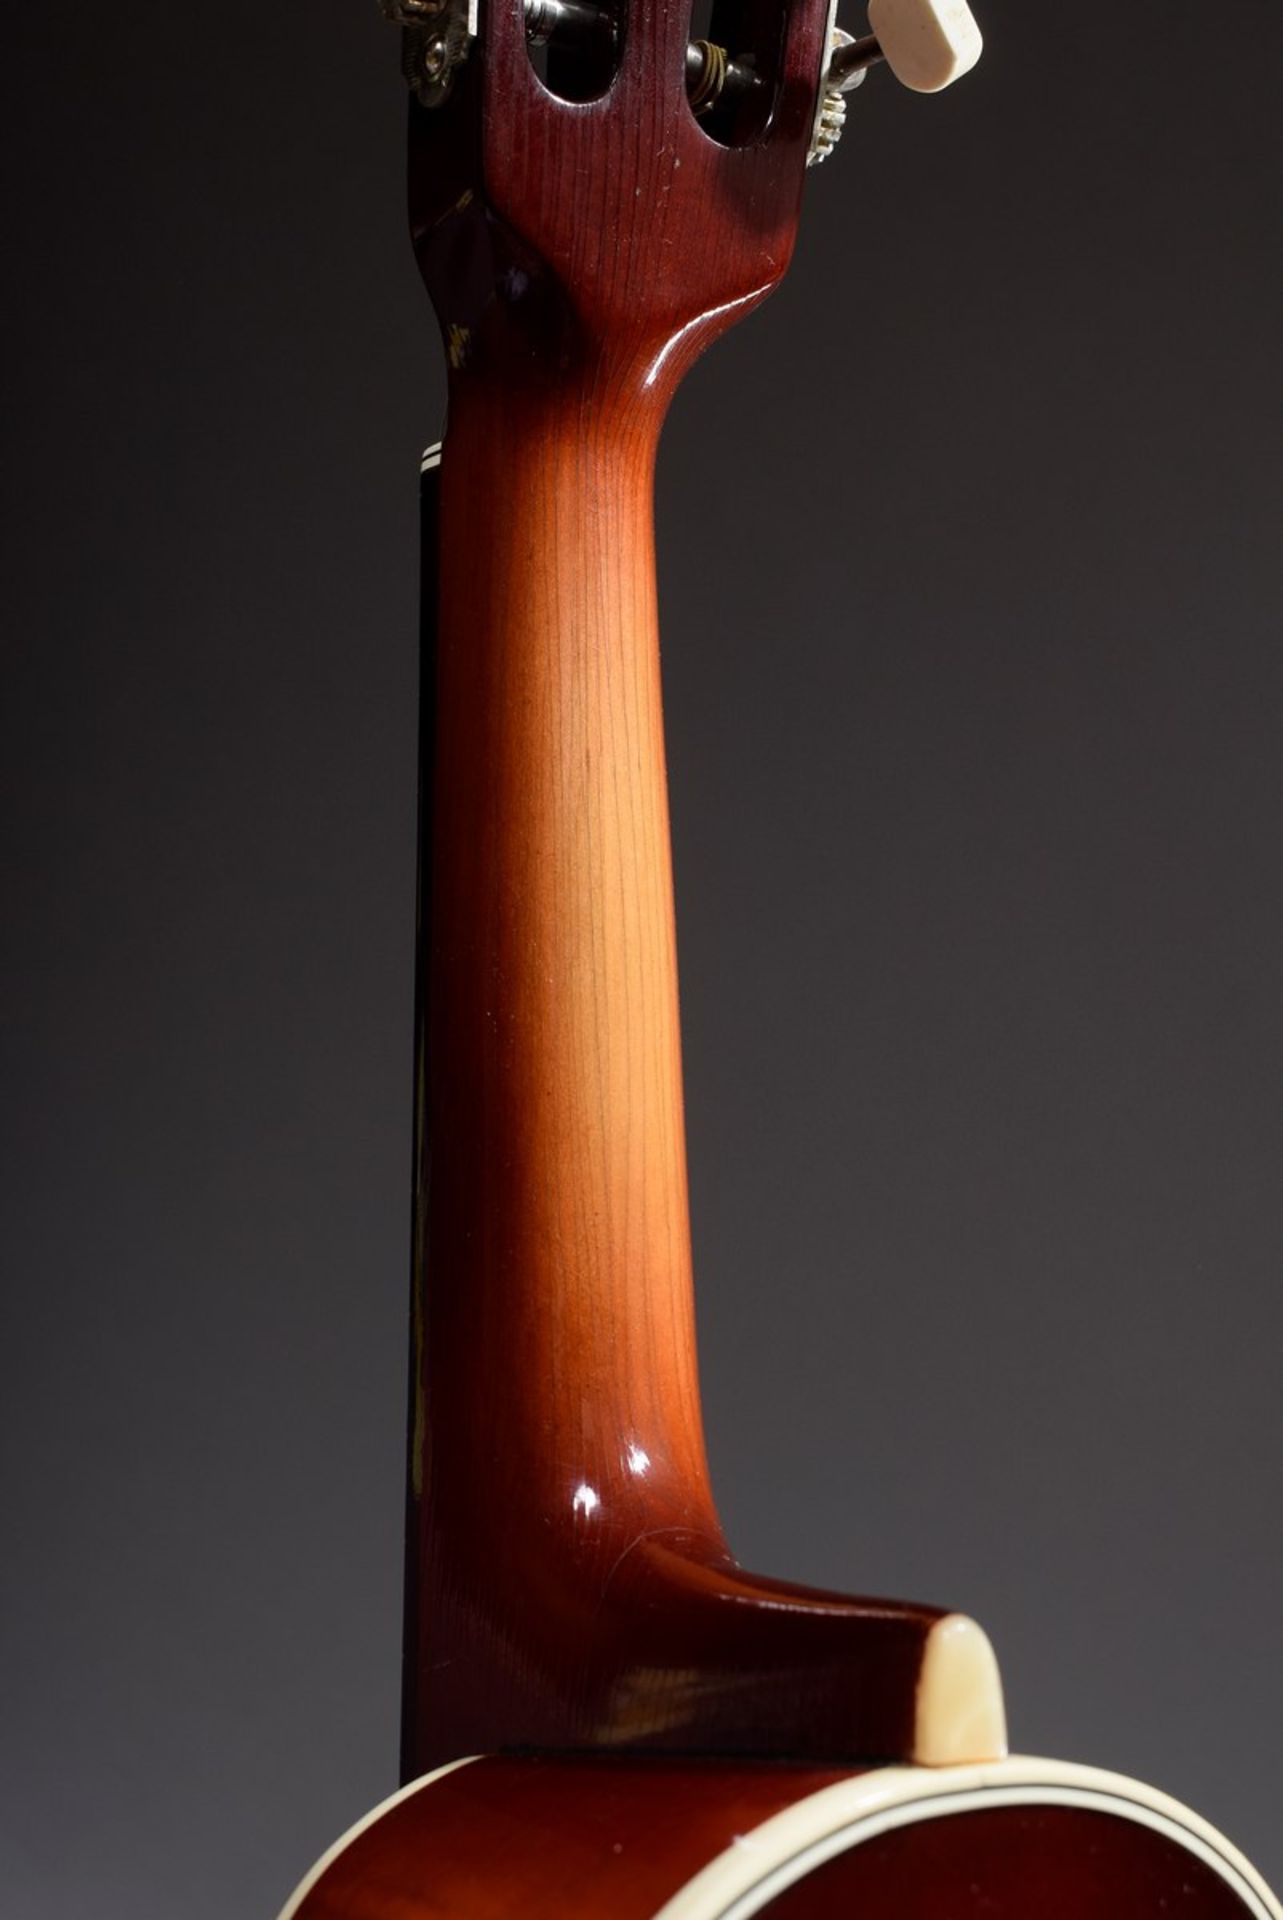 Jazz Mandoline "Cat Eye" von Höfner, Modell 542, um 1950/60, Korpuslänge 33cm, Gesamtlänge 63,5cm, - Bild 6 aus 10